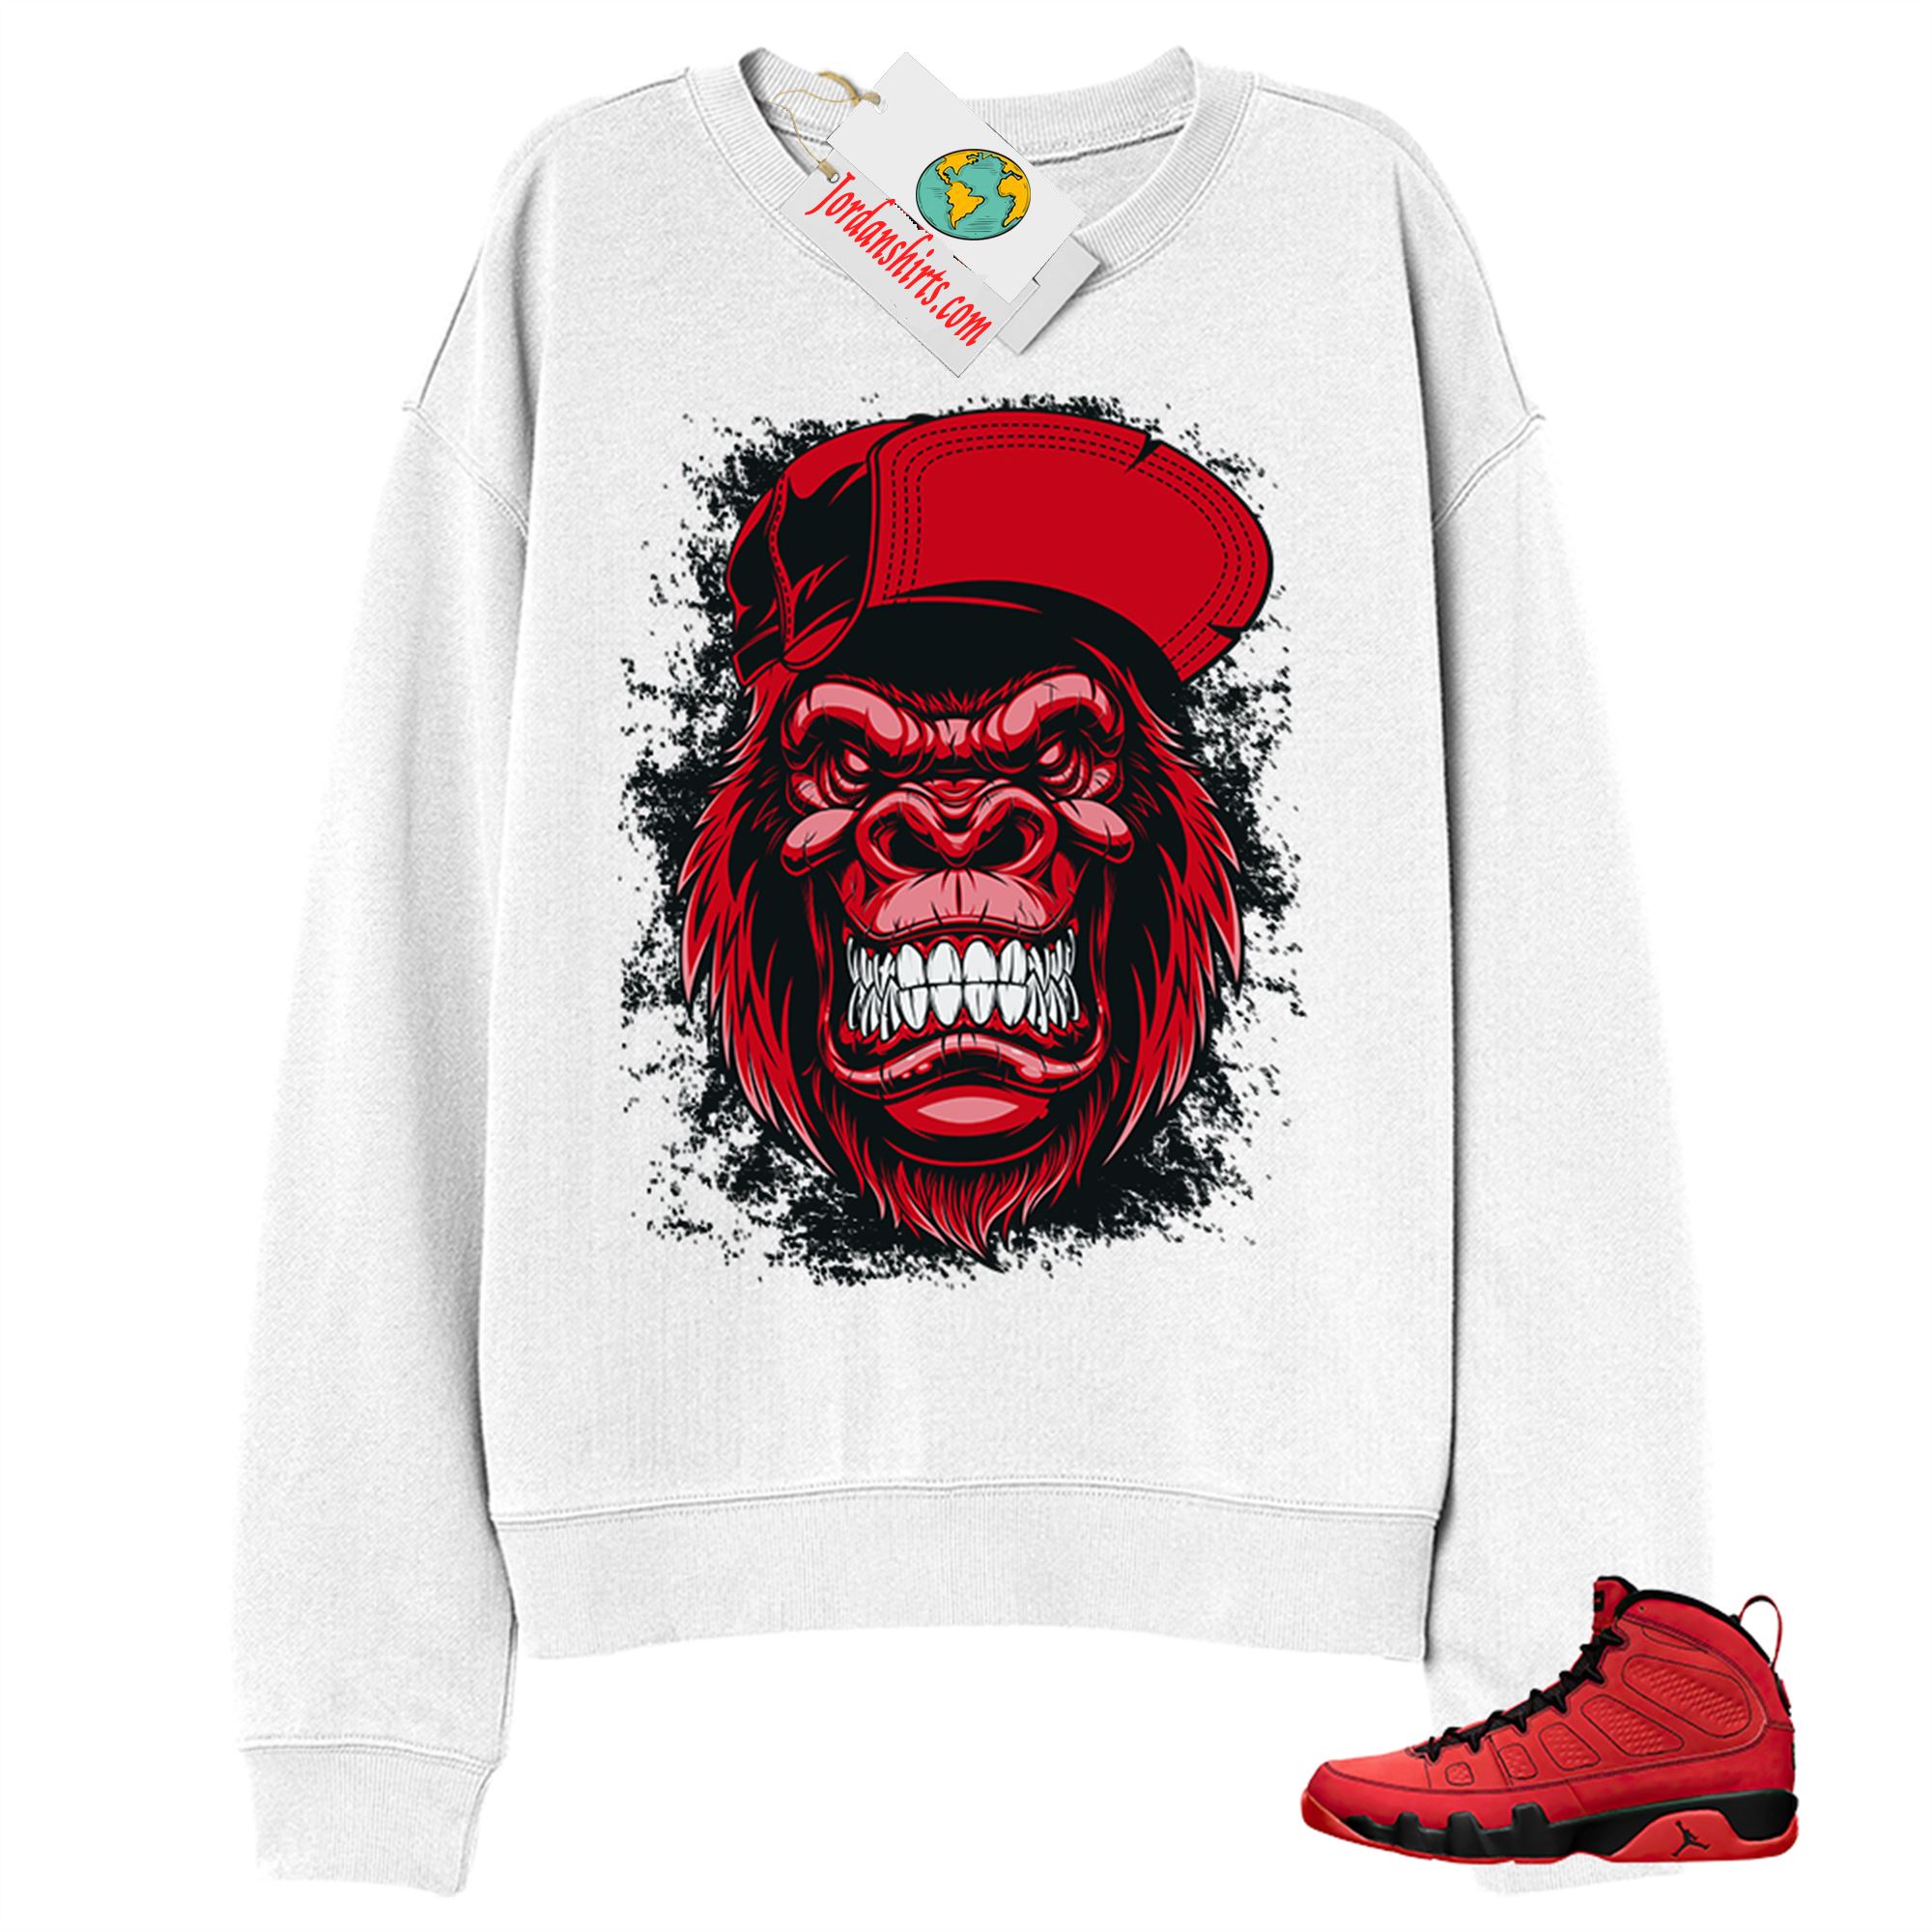 Jordan 9 Sweatshirt, Ferocious Gorilla White Sweatshirt Air Jordan 9 Chile Red 9s Plus Size Up To 5xl